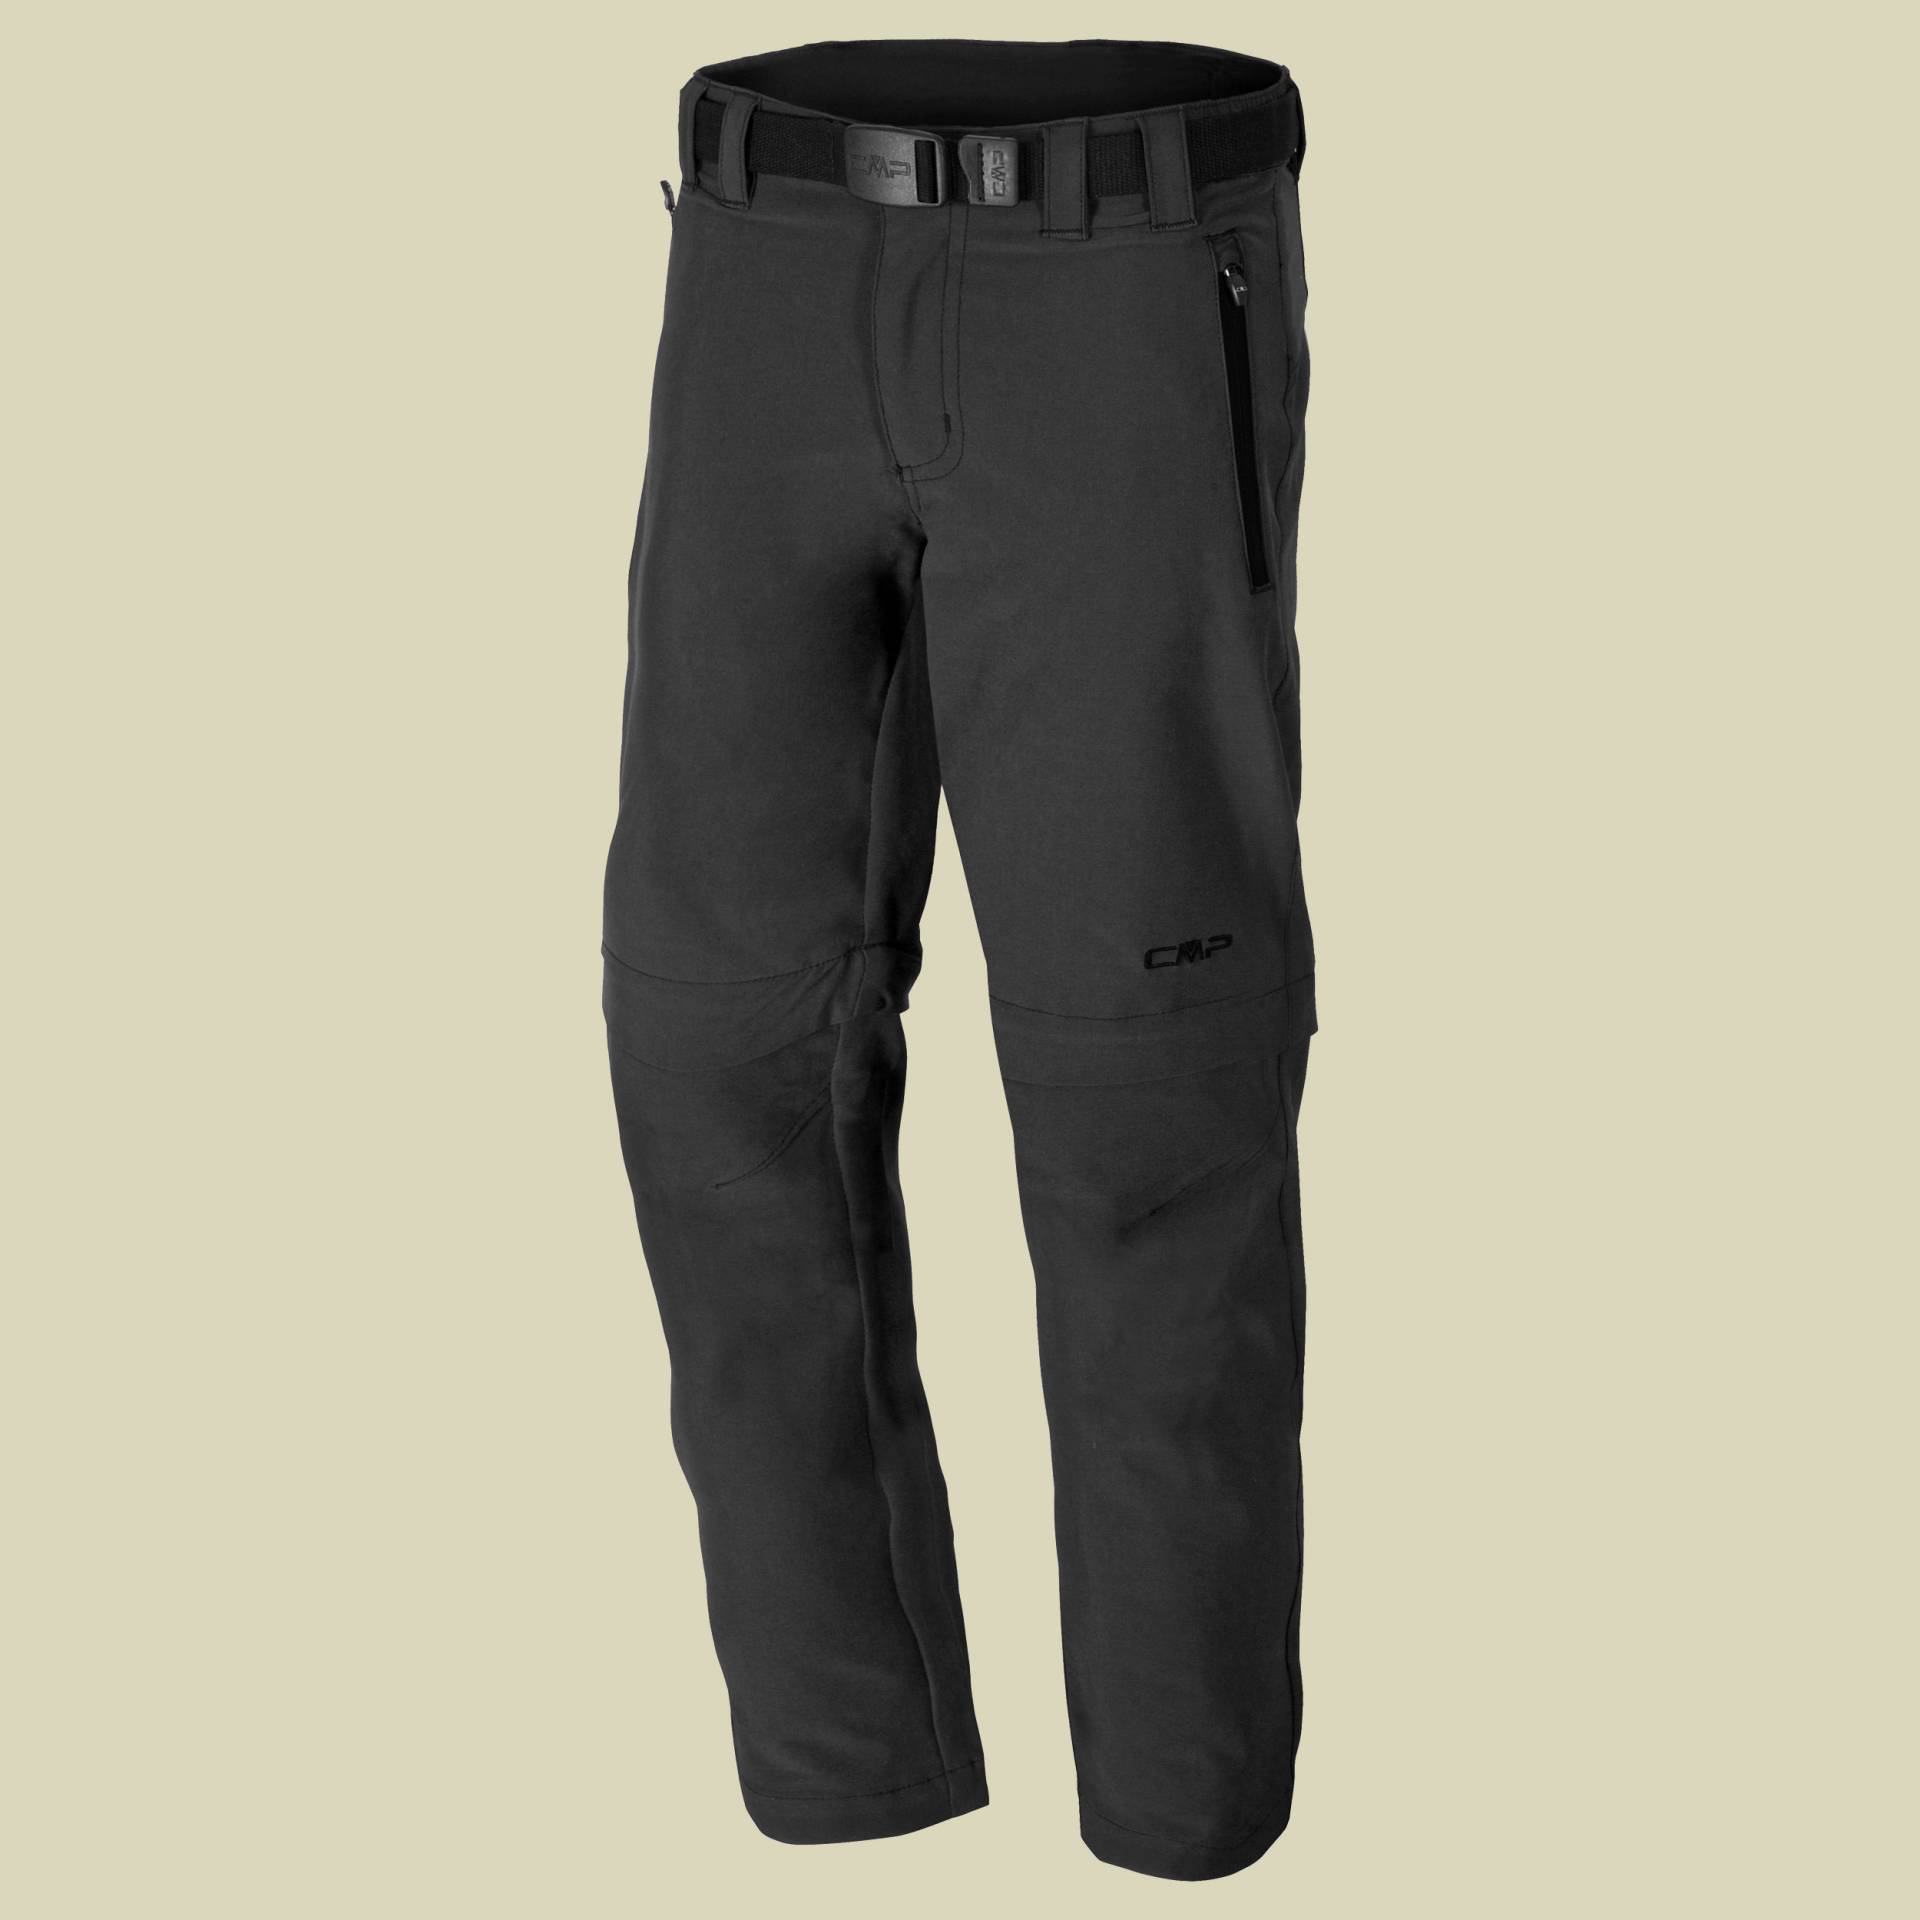 Man Long Pant Zip Off Stretch 3T51647 Größe 56 Farbe U423 antracite-nero von CMP